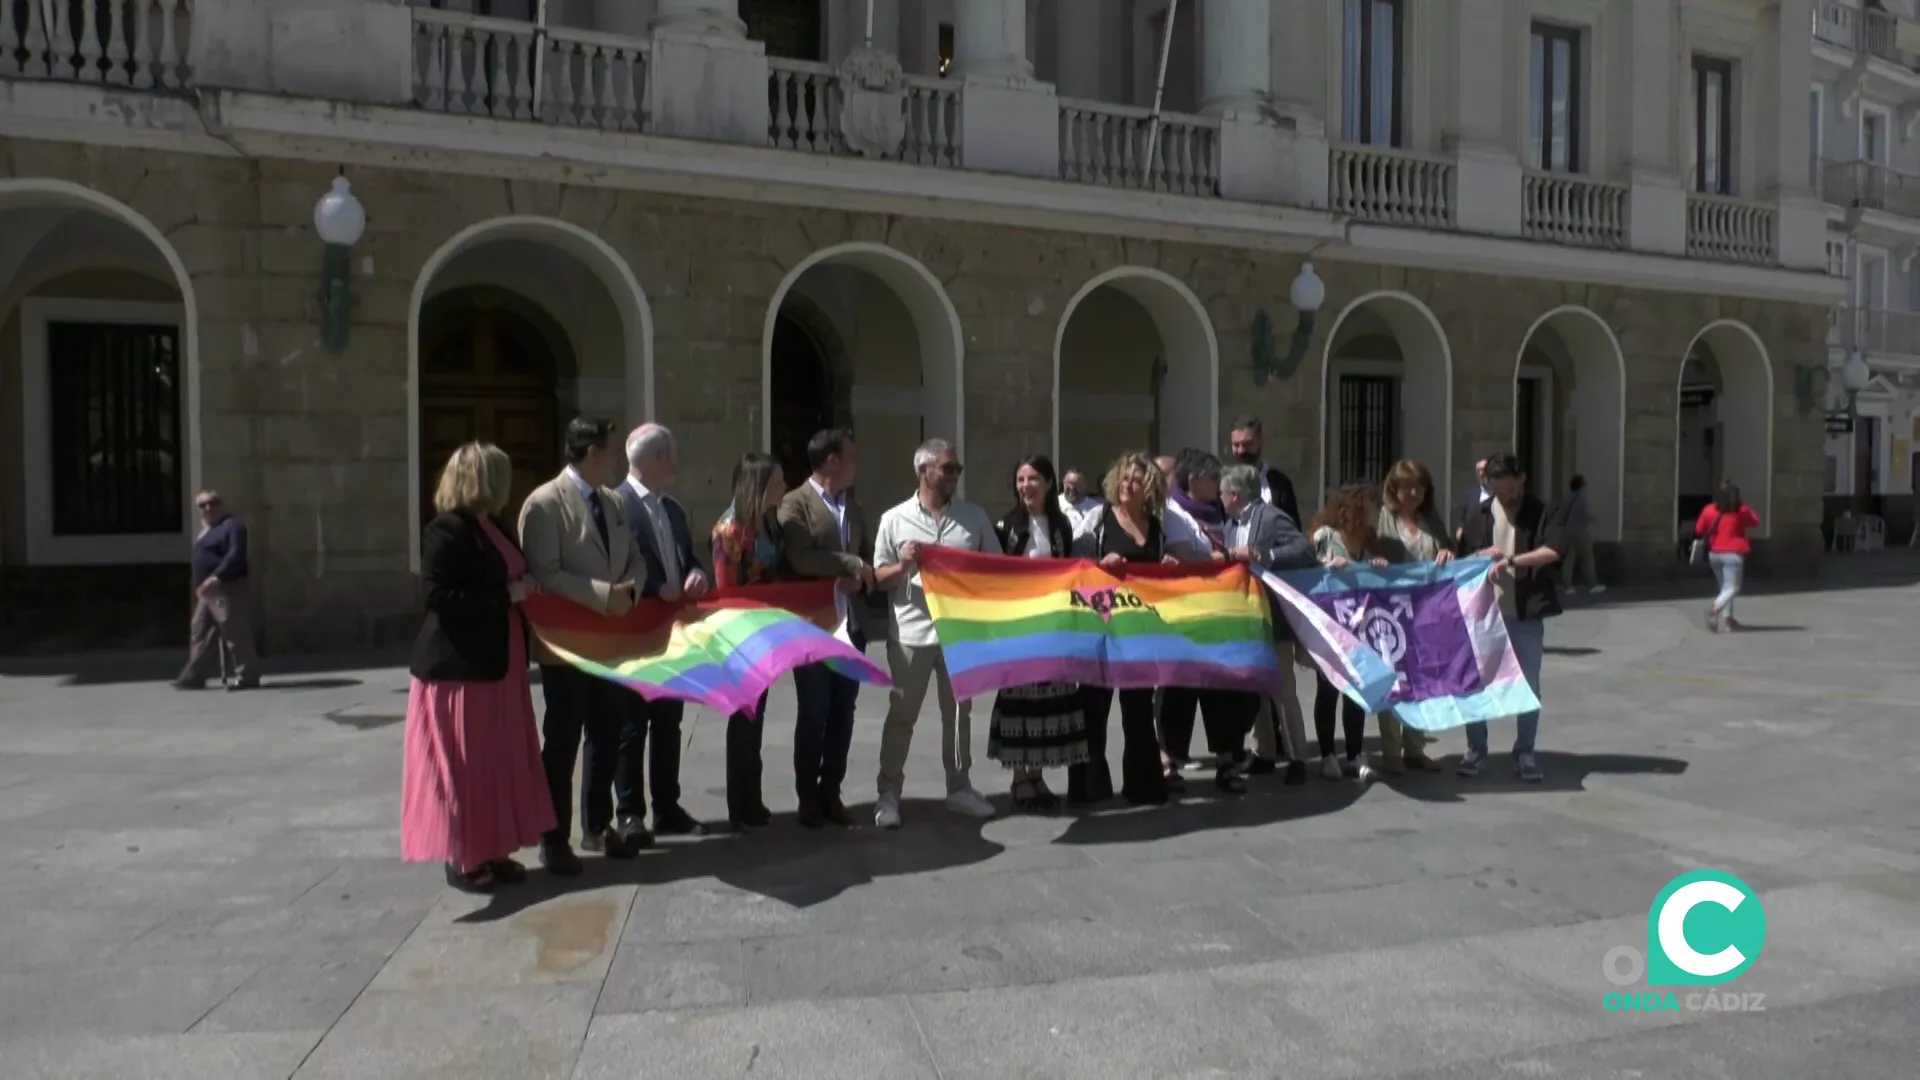 Representantes del Ayuntamiento de Cádiz arroparon el acto.